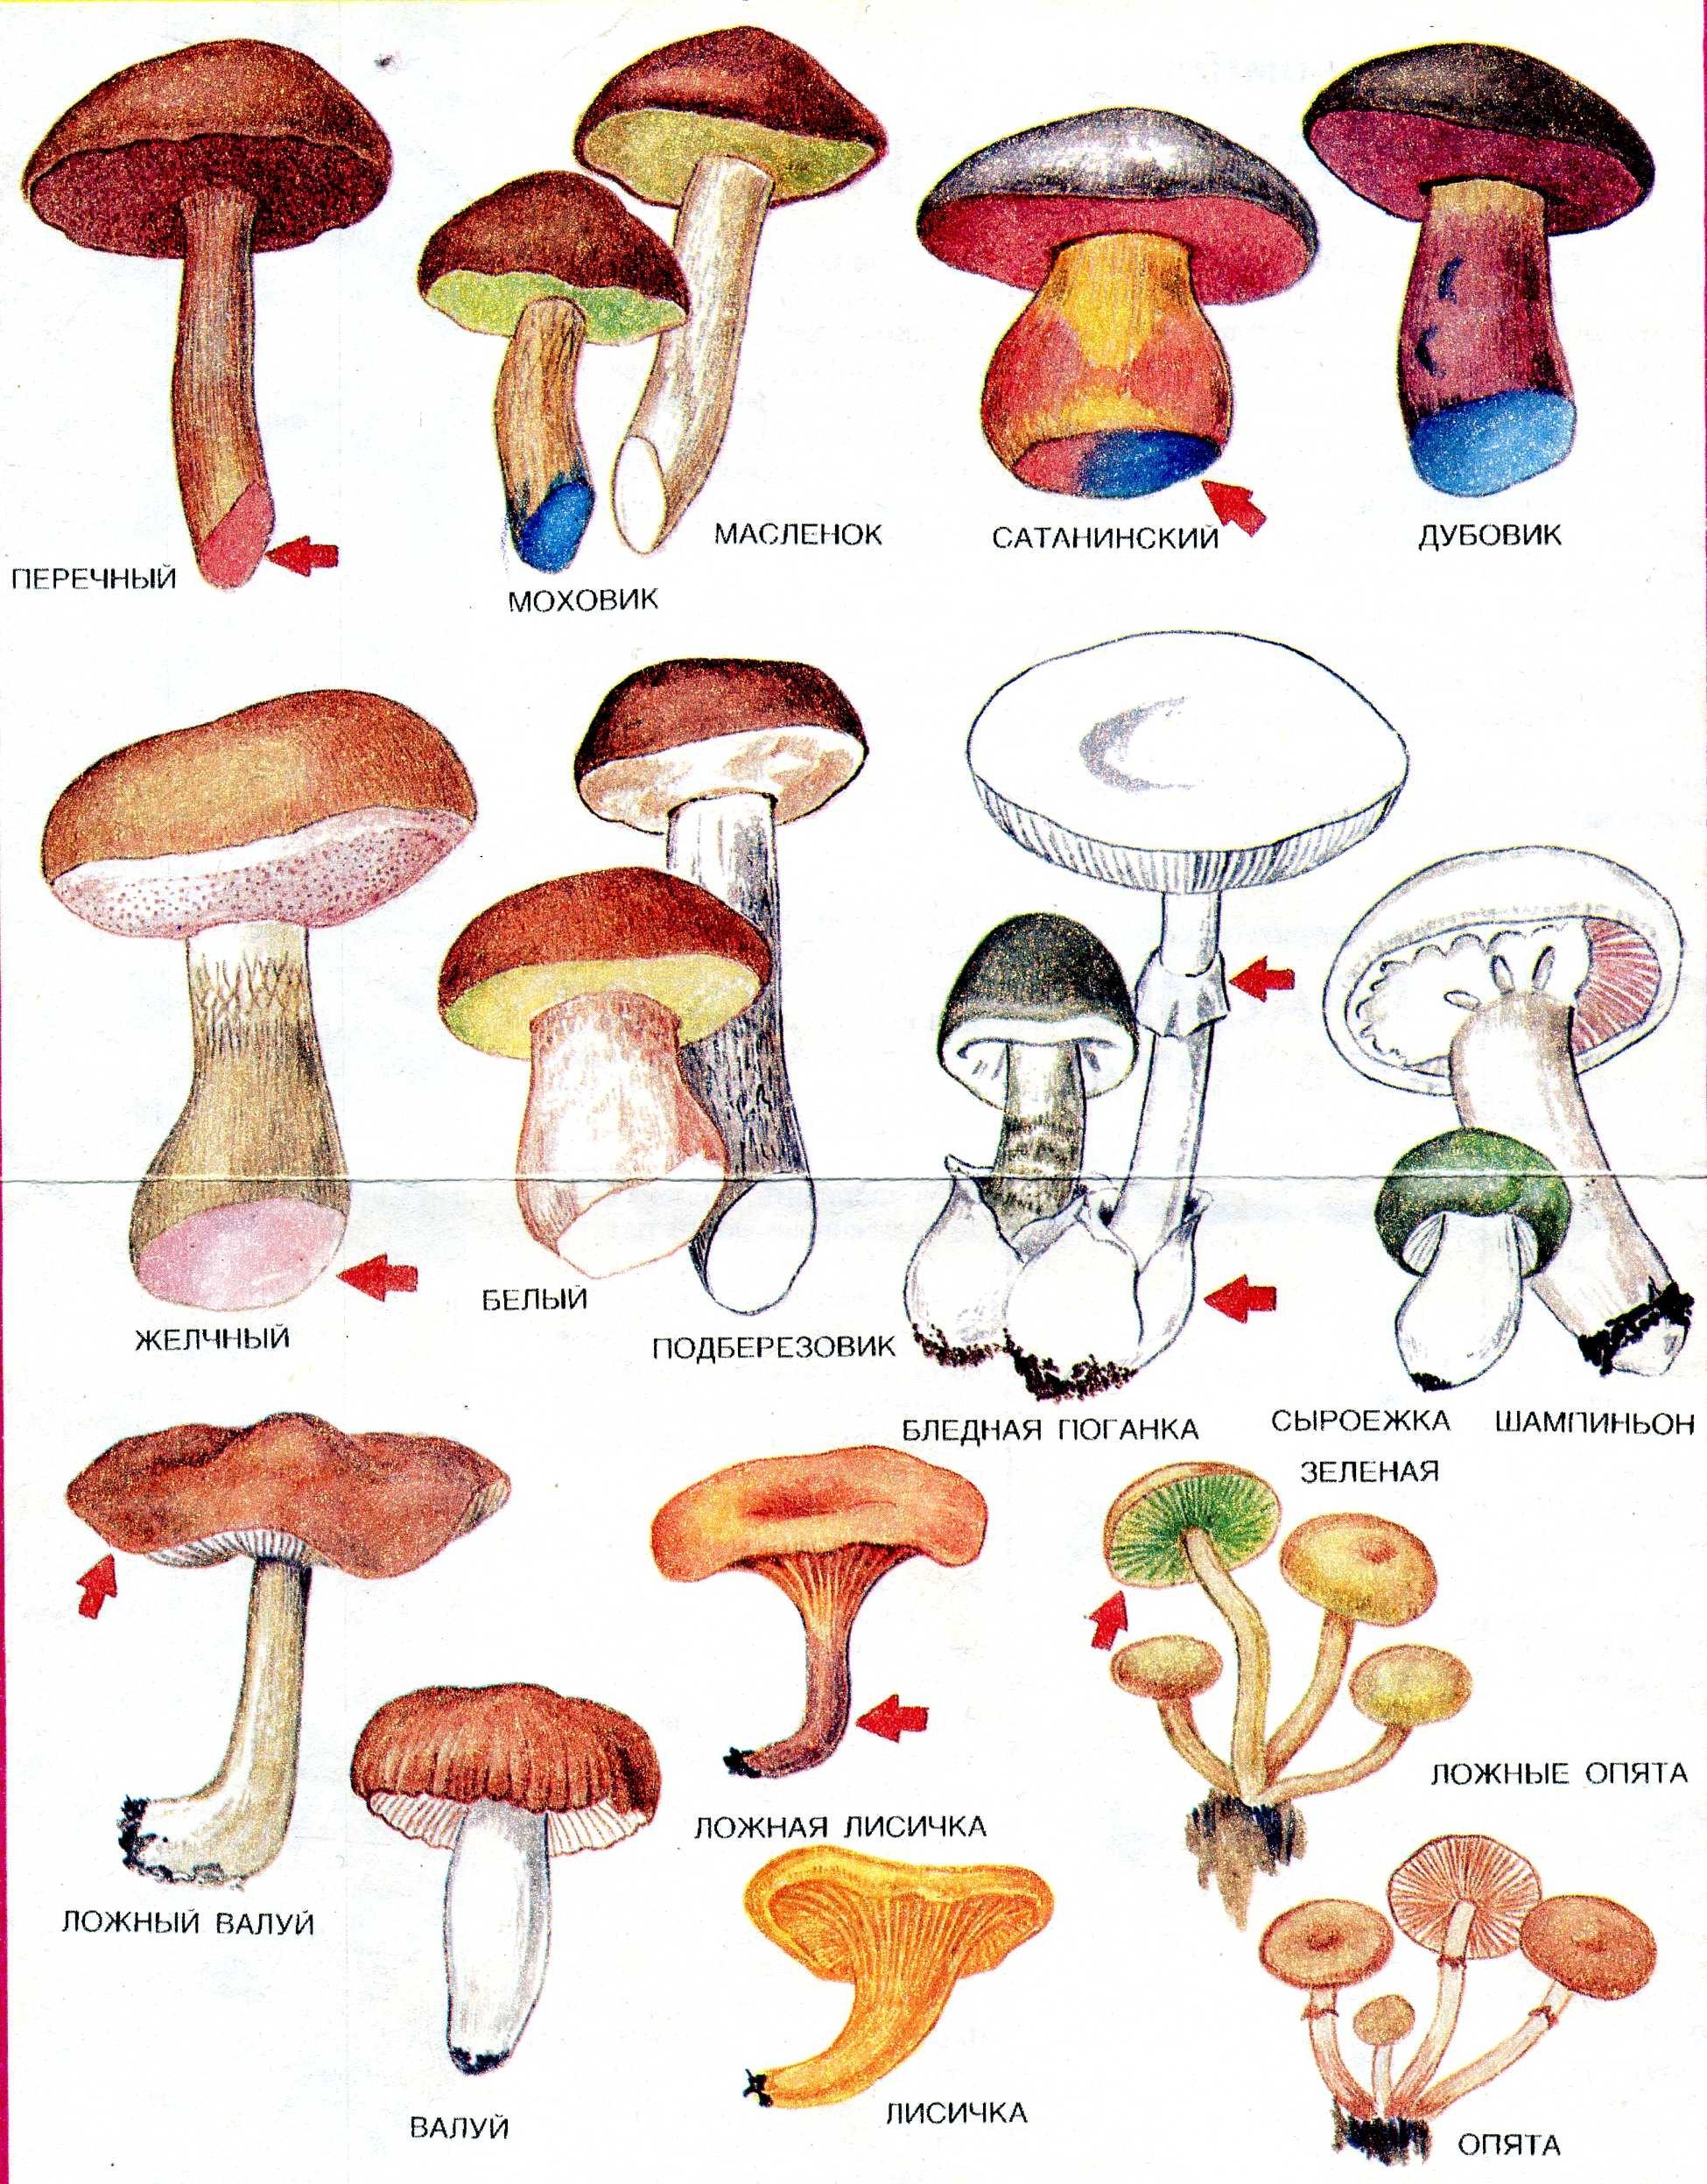 Название некоторых грибов. Грибы съедобные и несъедобные с названиями. Грибы съедобные и несъедобные грибы и ядовитые грибы. Грибы съедобные и несъедобные с названиями и описанием. Съедобные грибы и несъедобные грибы названия таблица.